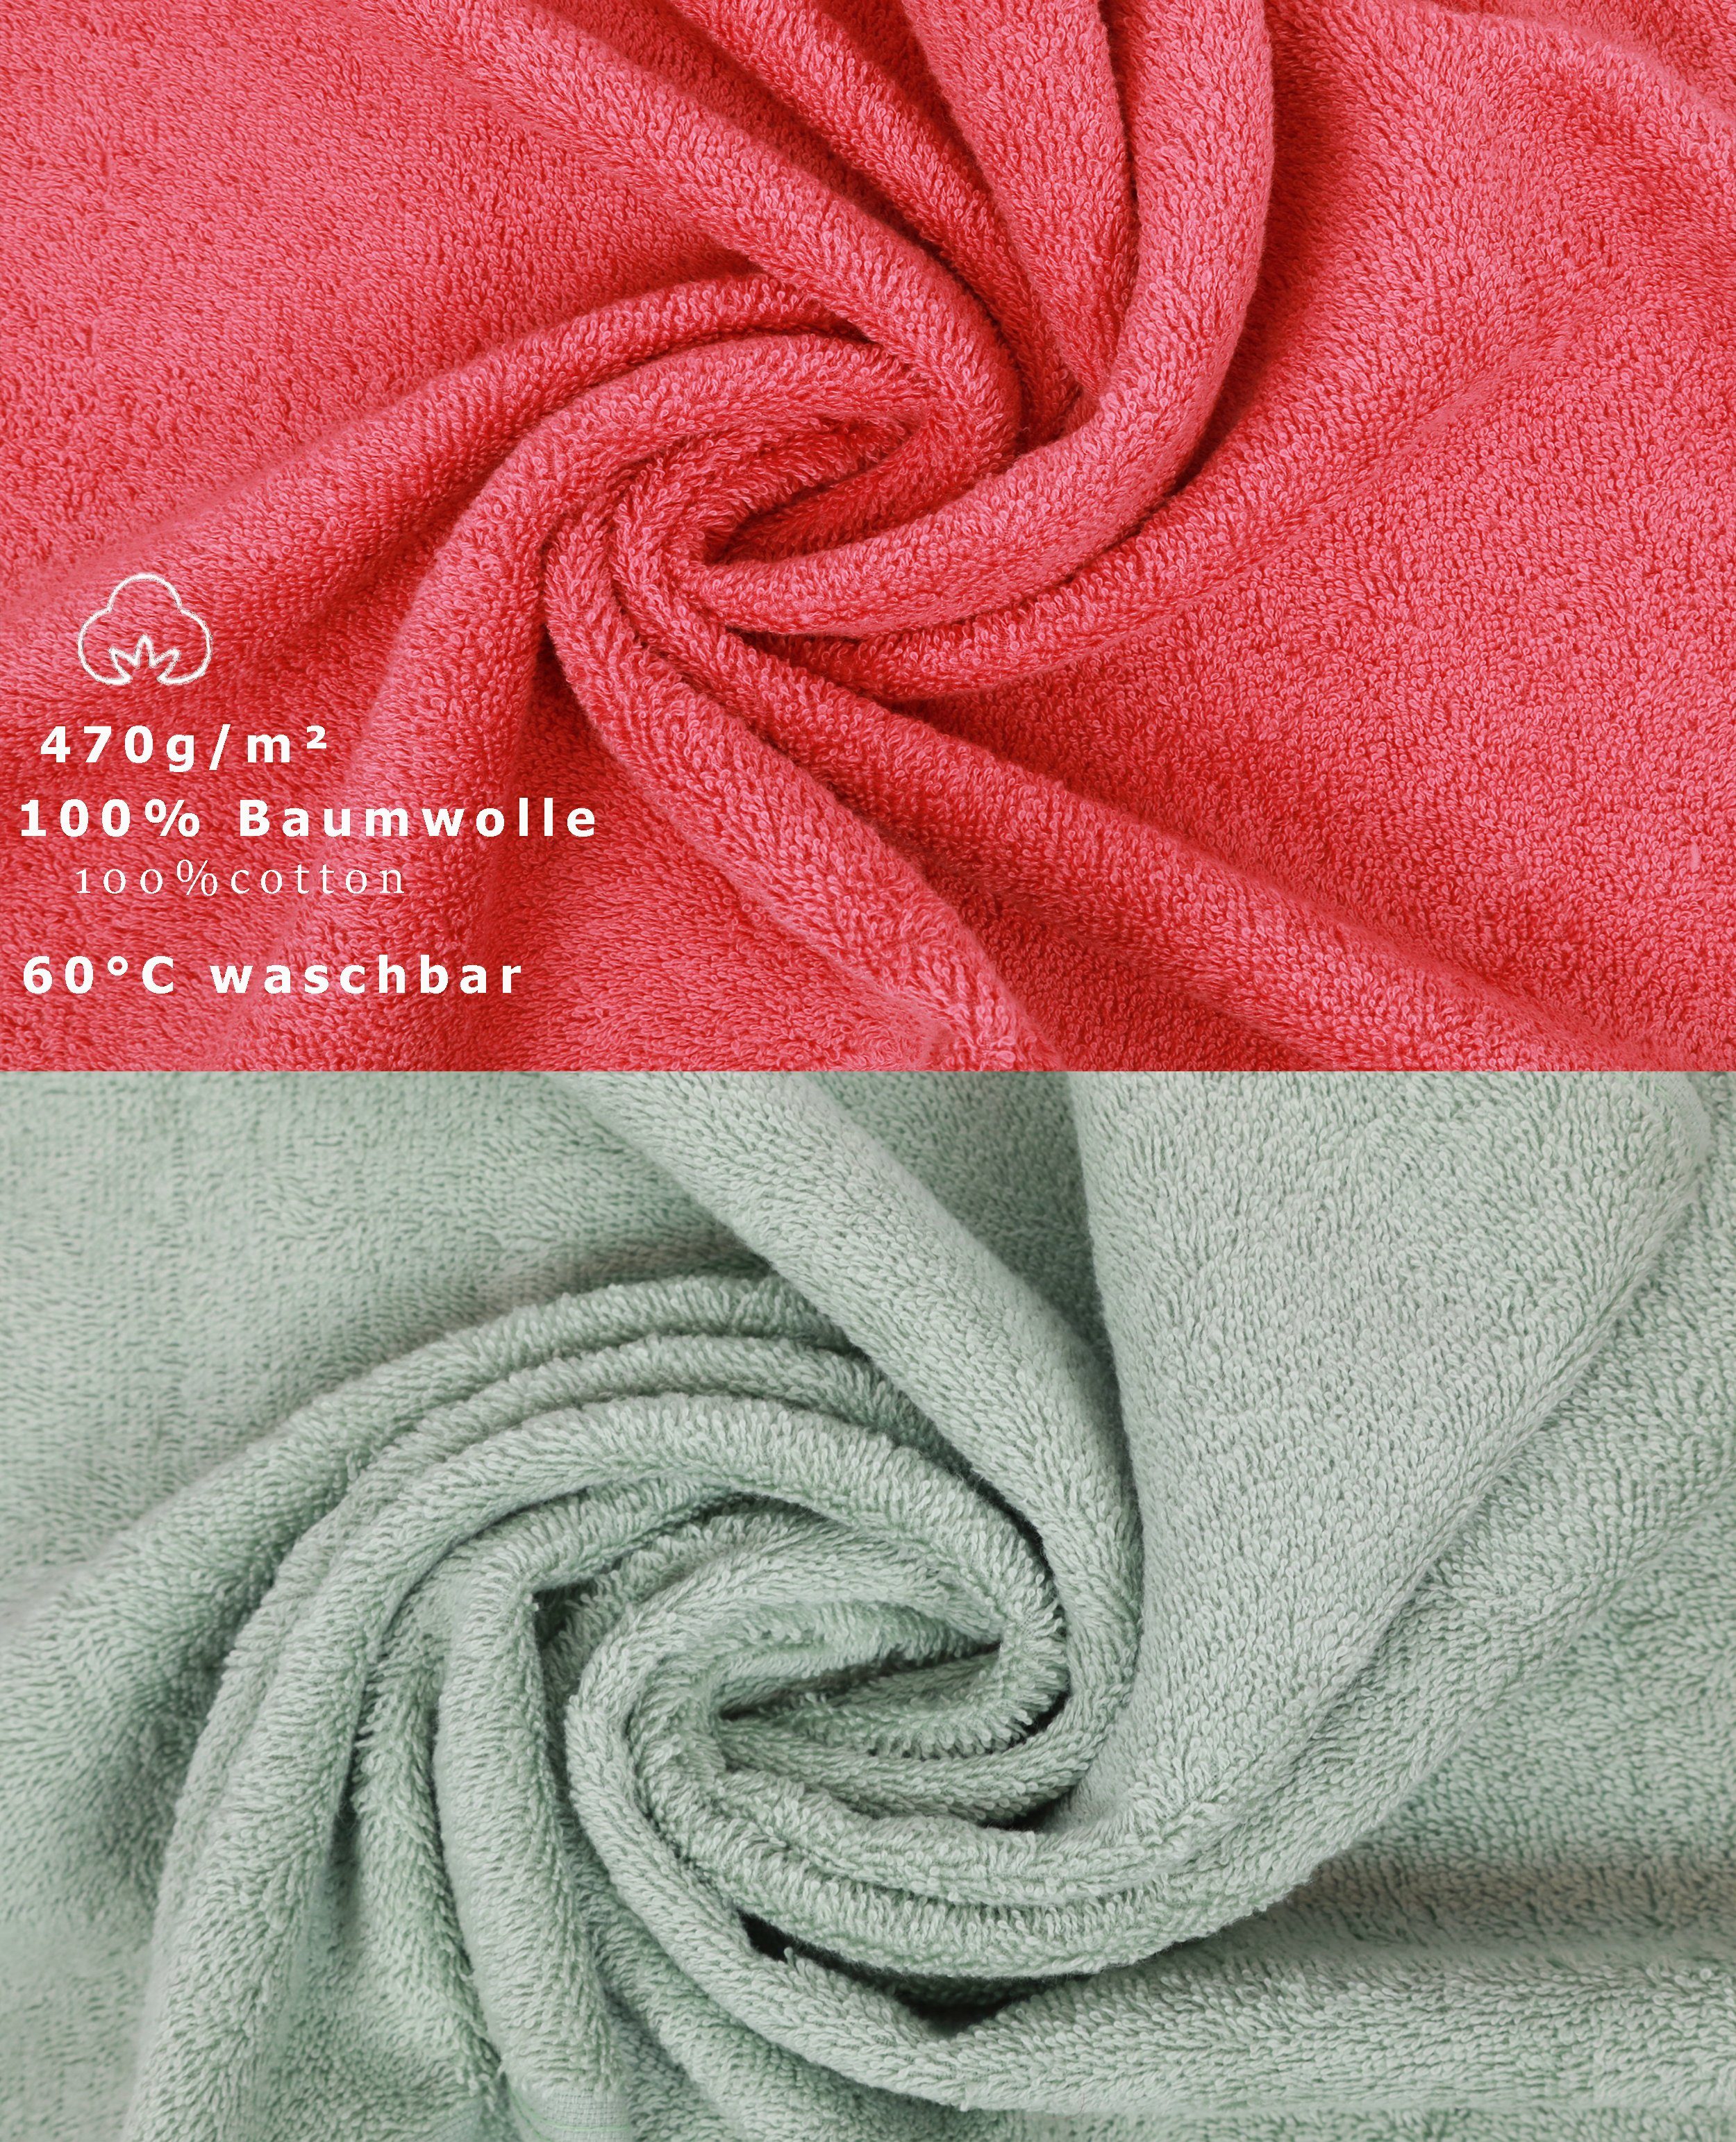 12-TLG. Handtuch Premium Betz Handtuch Set Baumwolle, Himbeere/heugrün, (12-tlg) Set